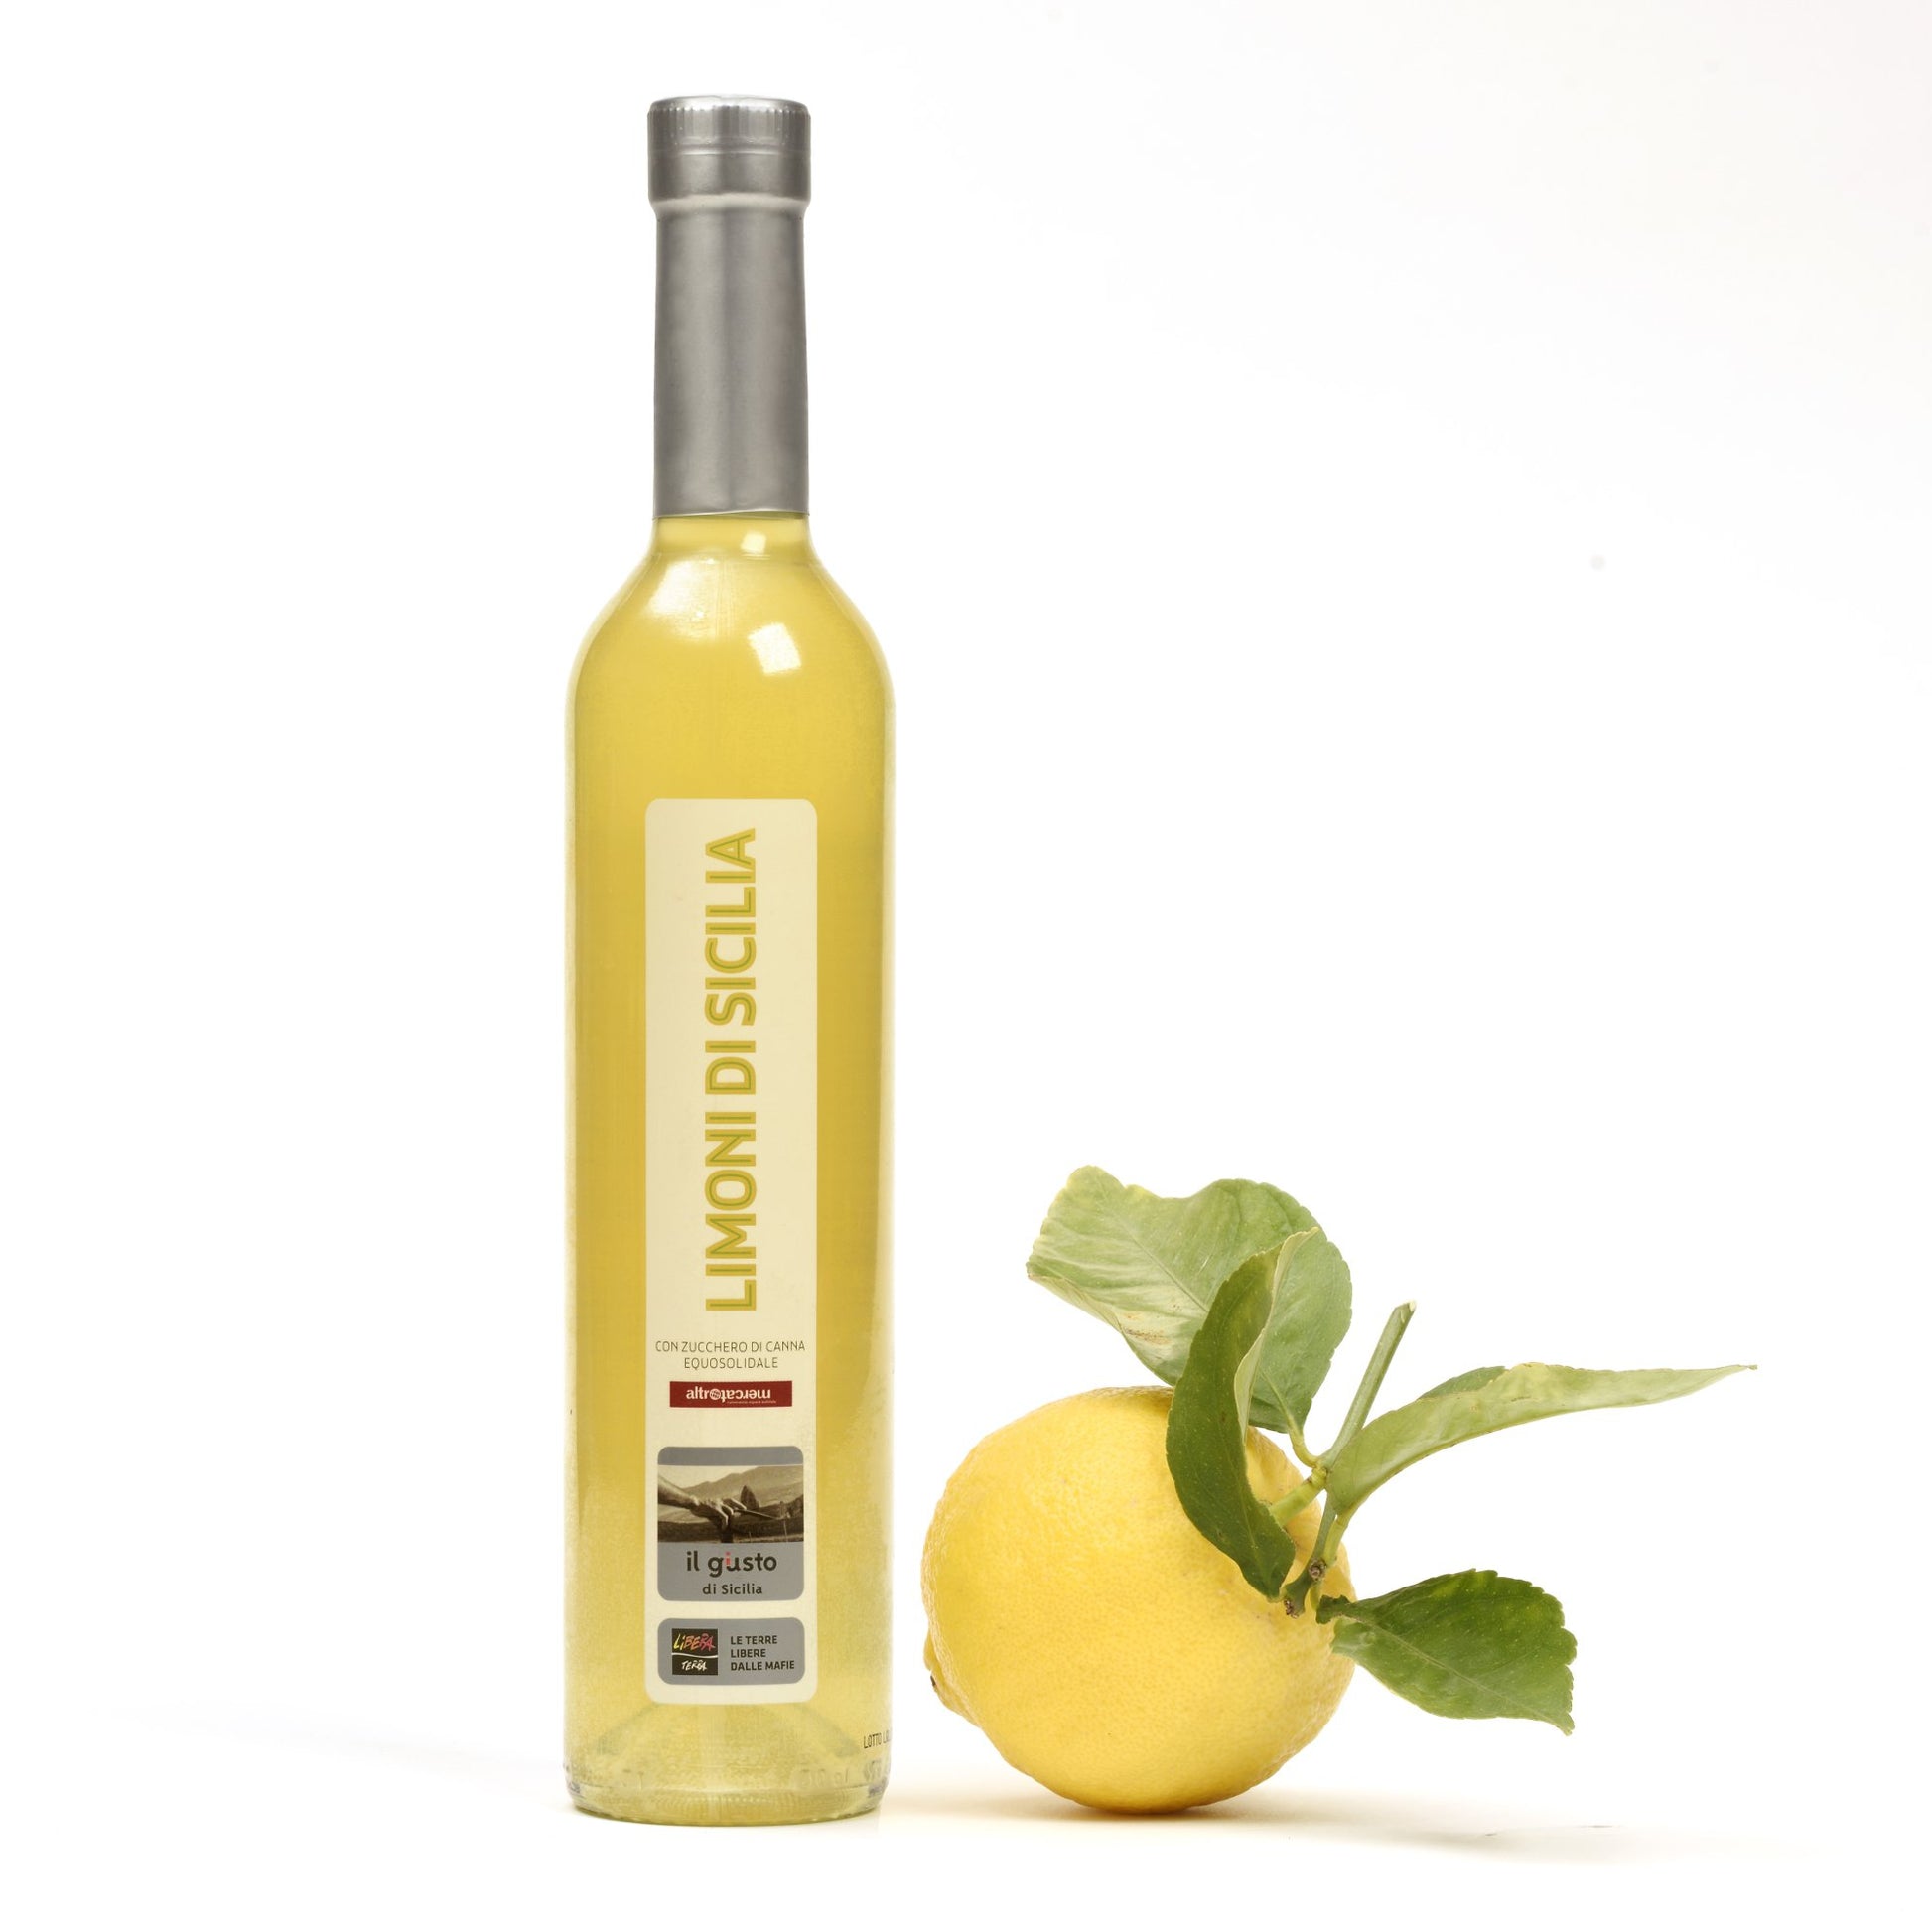 Liquore di limoni di sicilia gusto dolce aromatico prodotto da Libera Terra e Altromercato